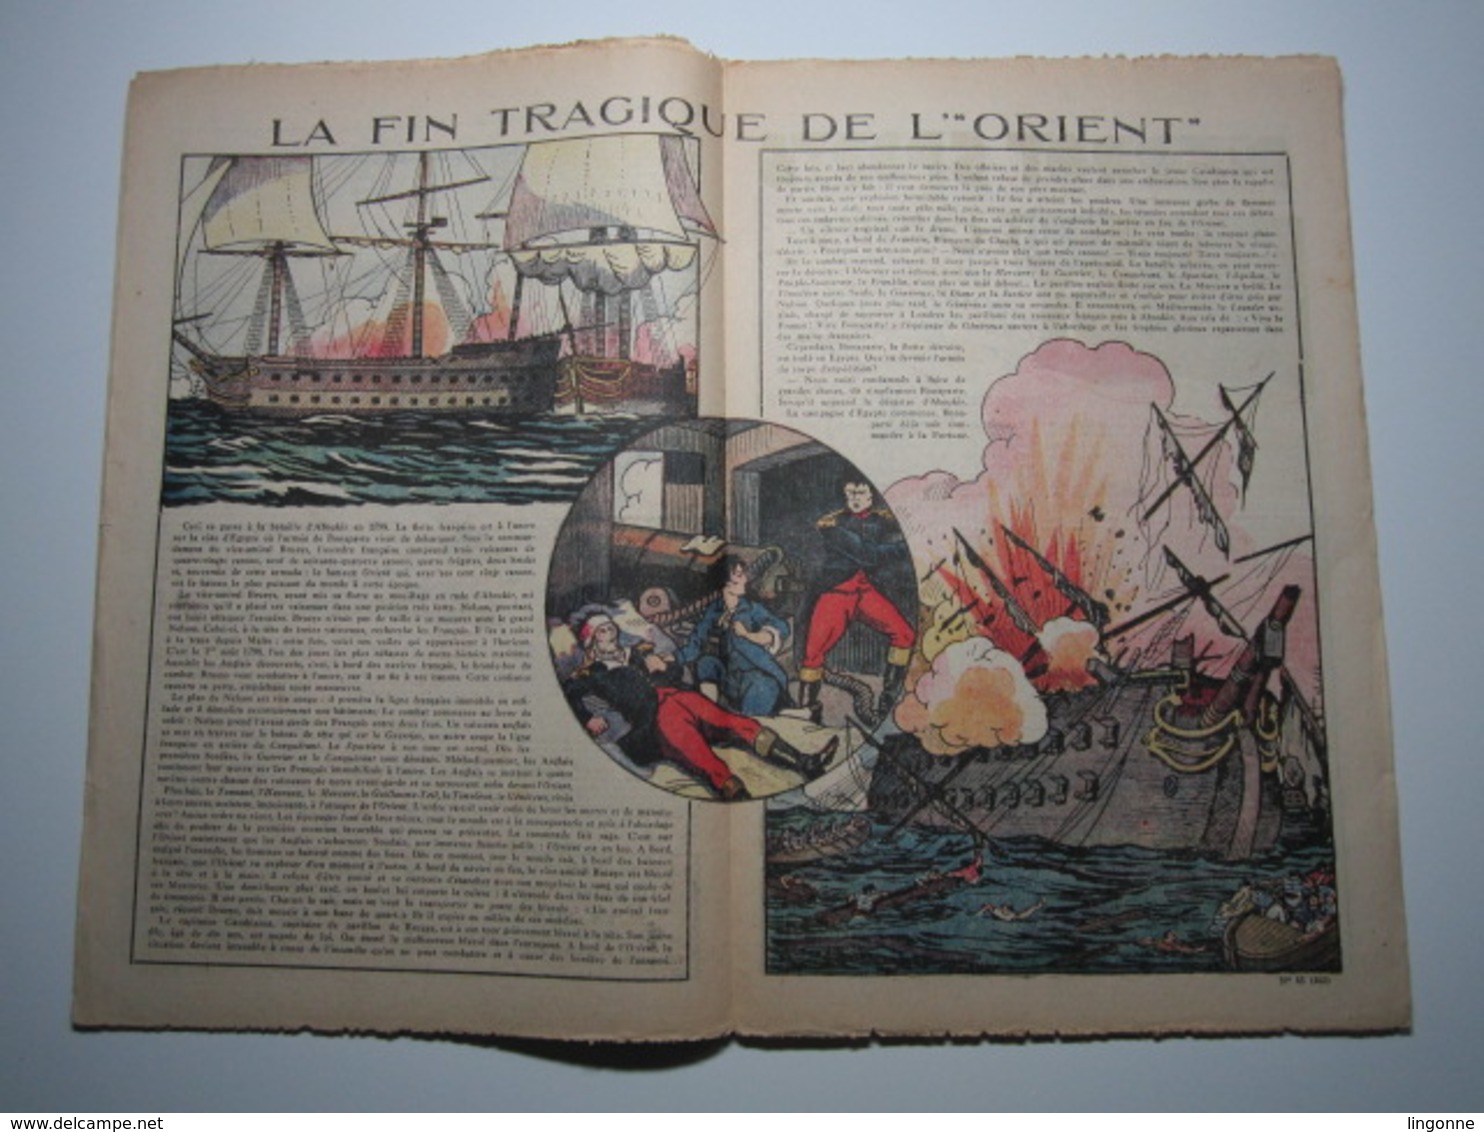 28 Octobre 1934 PIERROT JOURNAL DES GARÇONS 25Cts - Pierrot